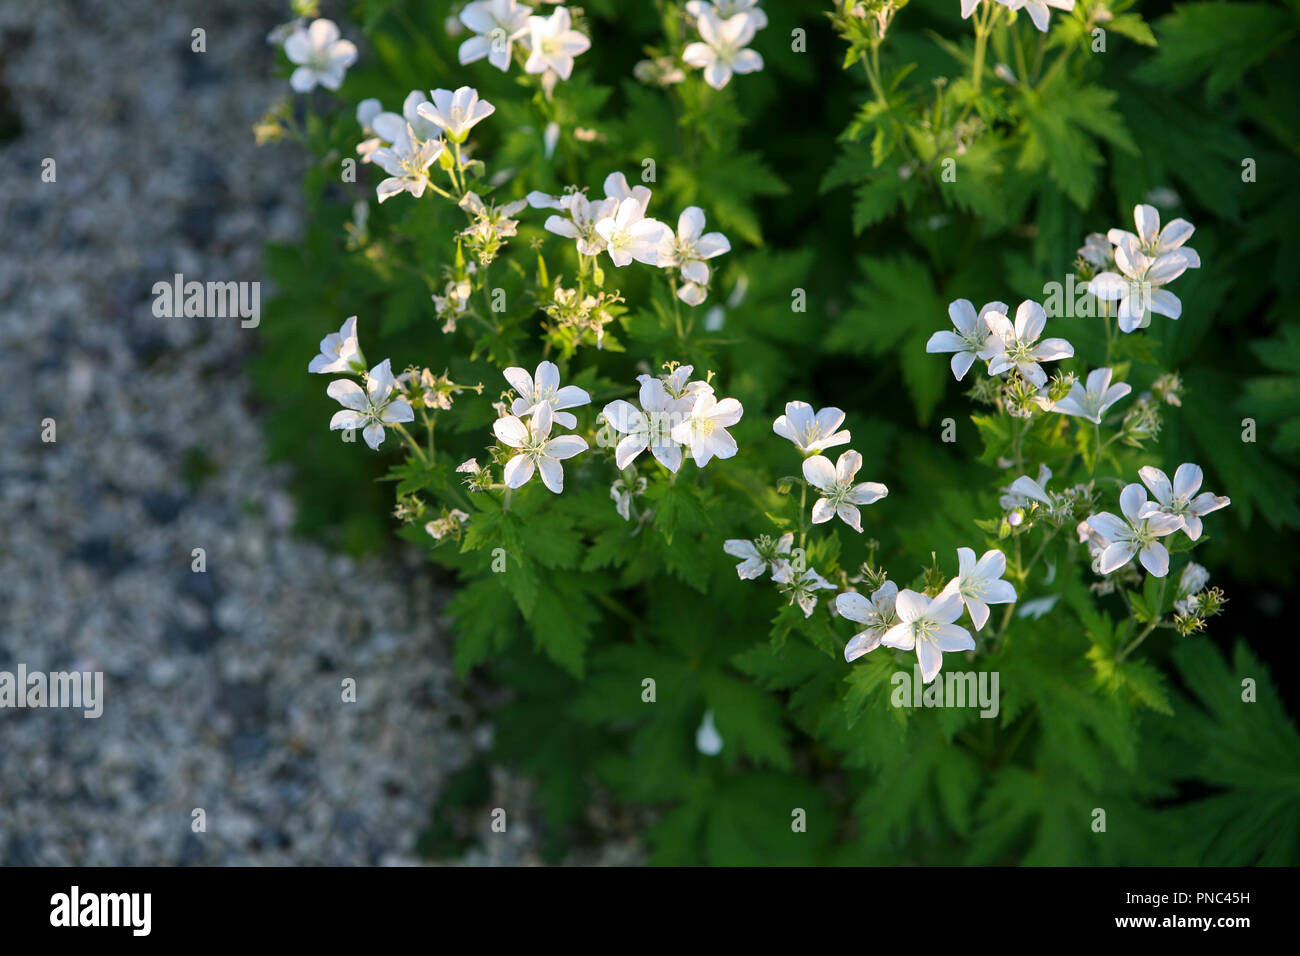 Geranium sylvaticum 'Album' edging a garden path Stock Photo